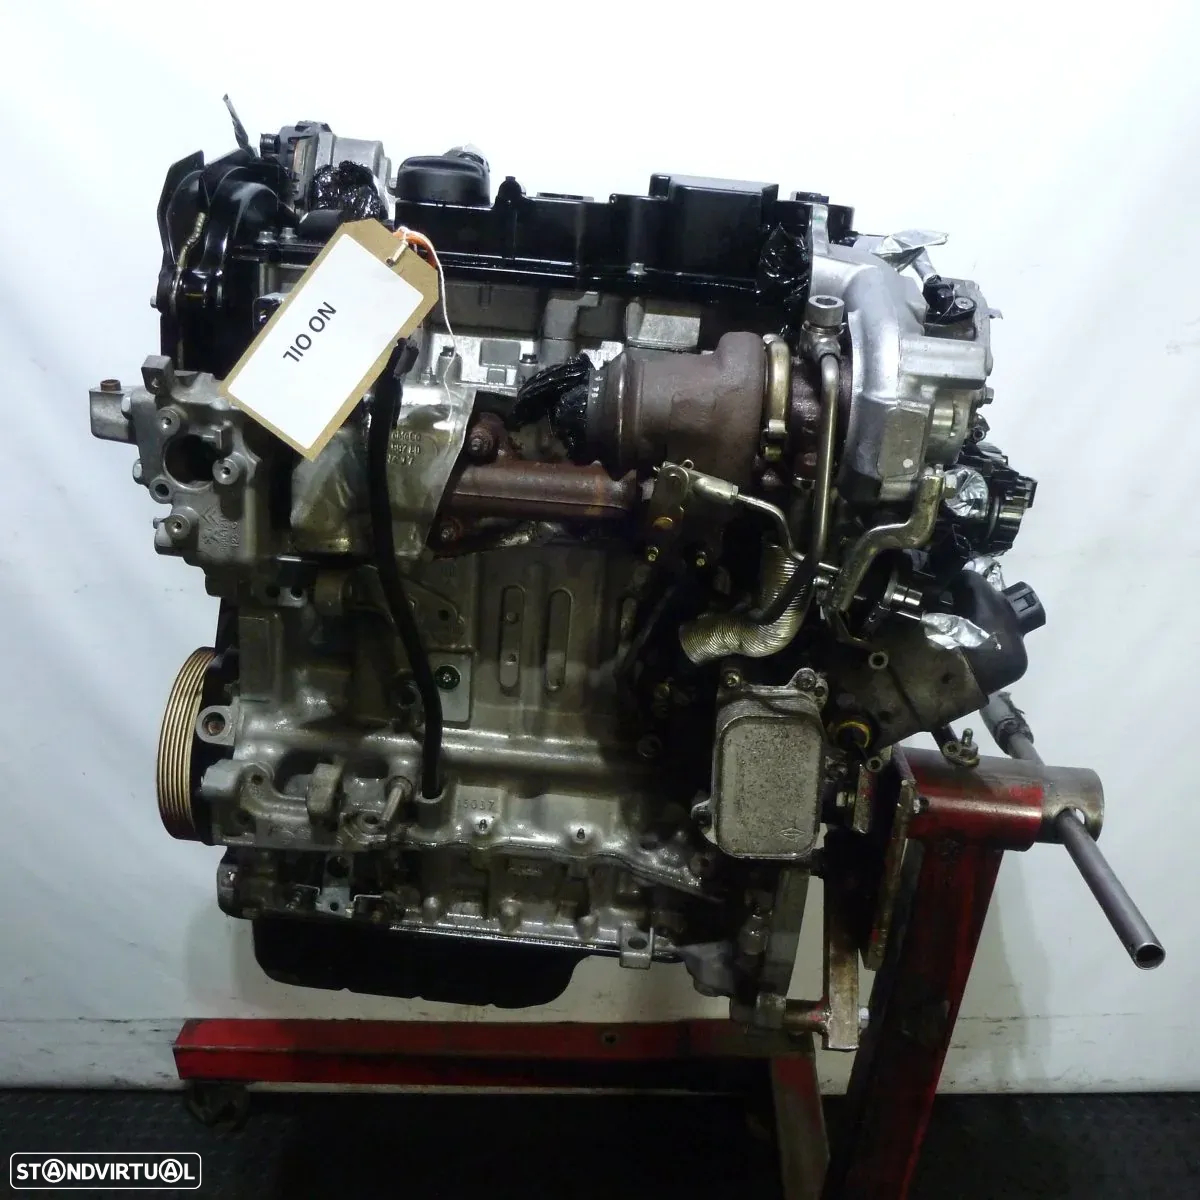 Motor BHX CITROEN 1.6L 116 CV - 3